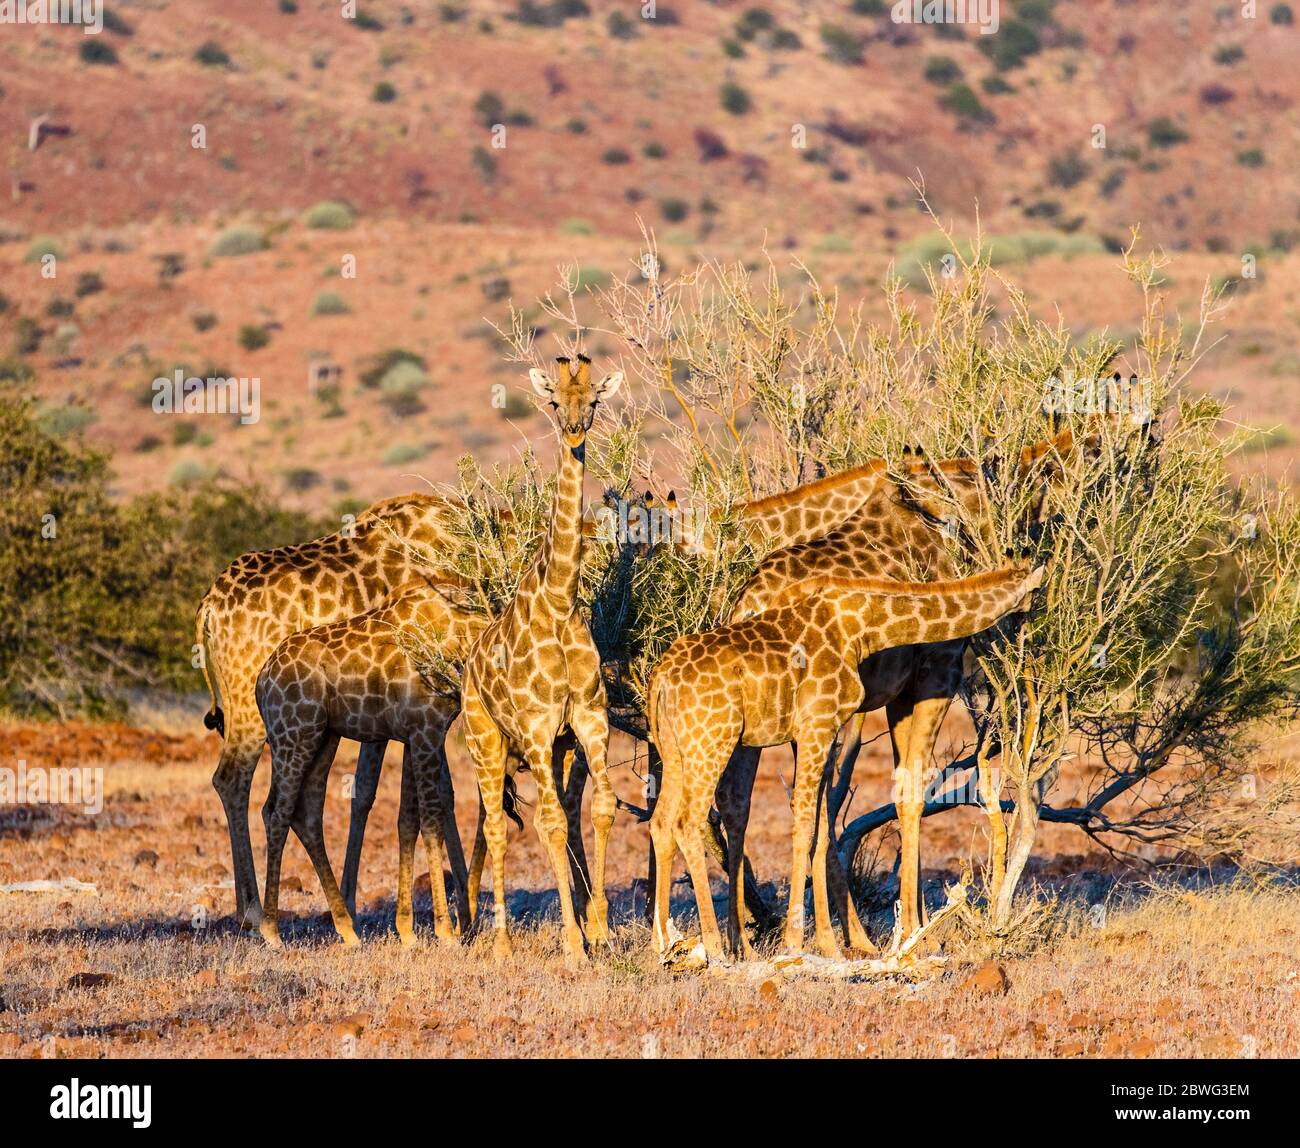 Herd of southern giraffes (Giraffa giraffa), Damaraland, Namibia, Africa Stock Photo